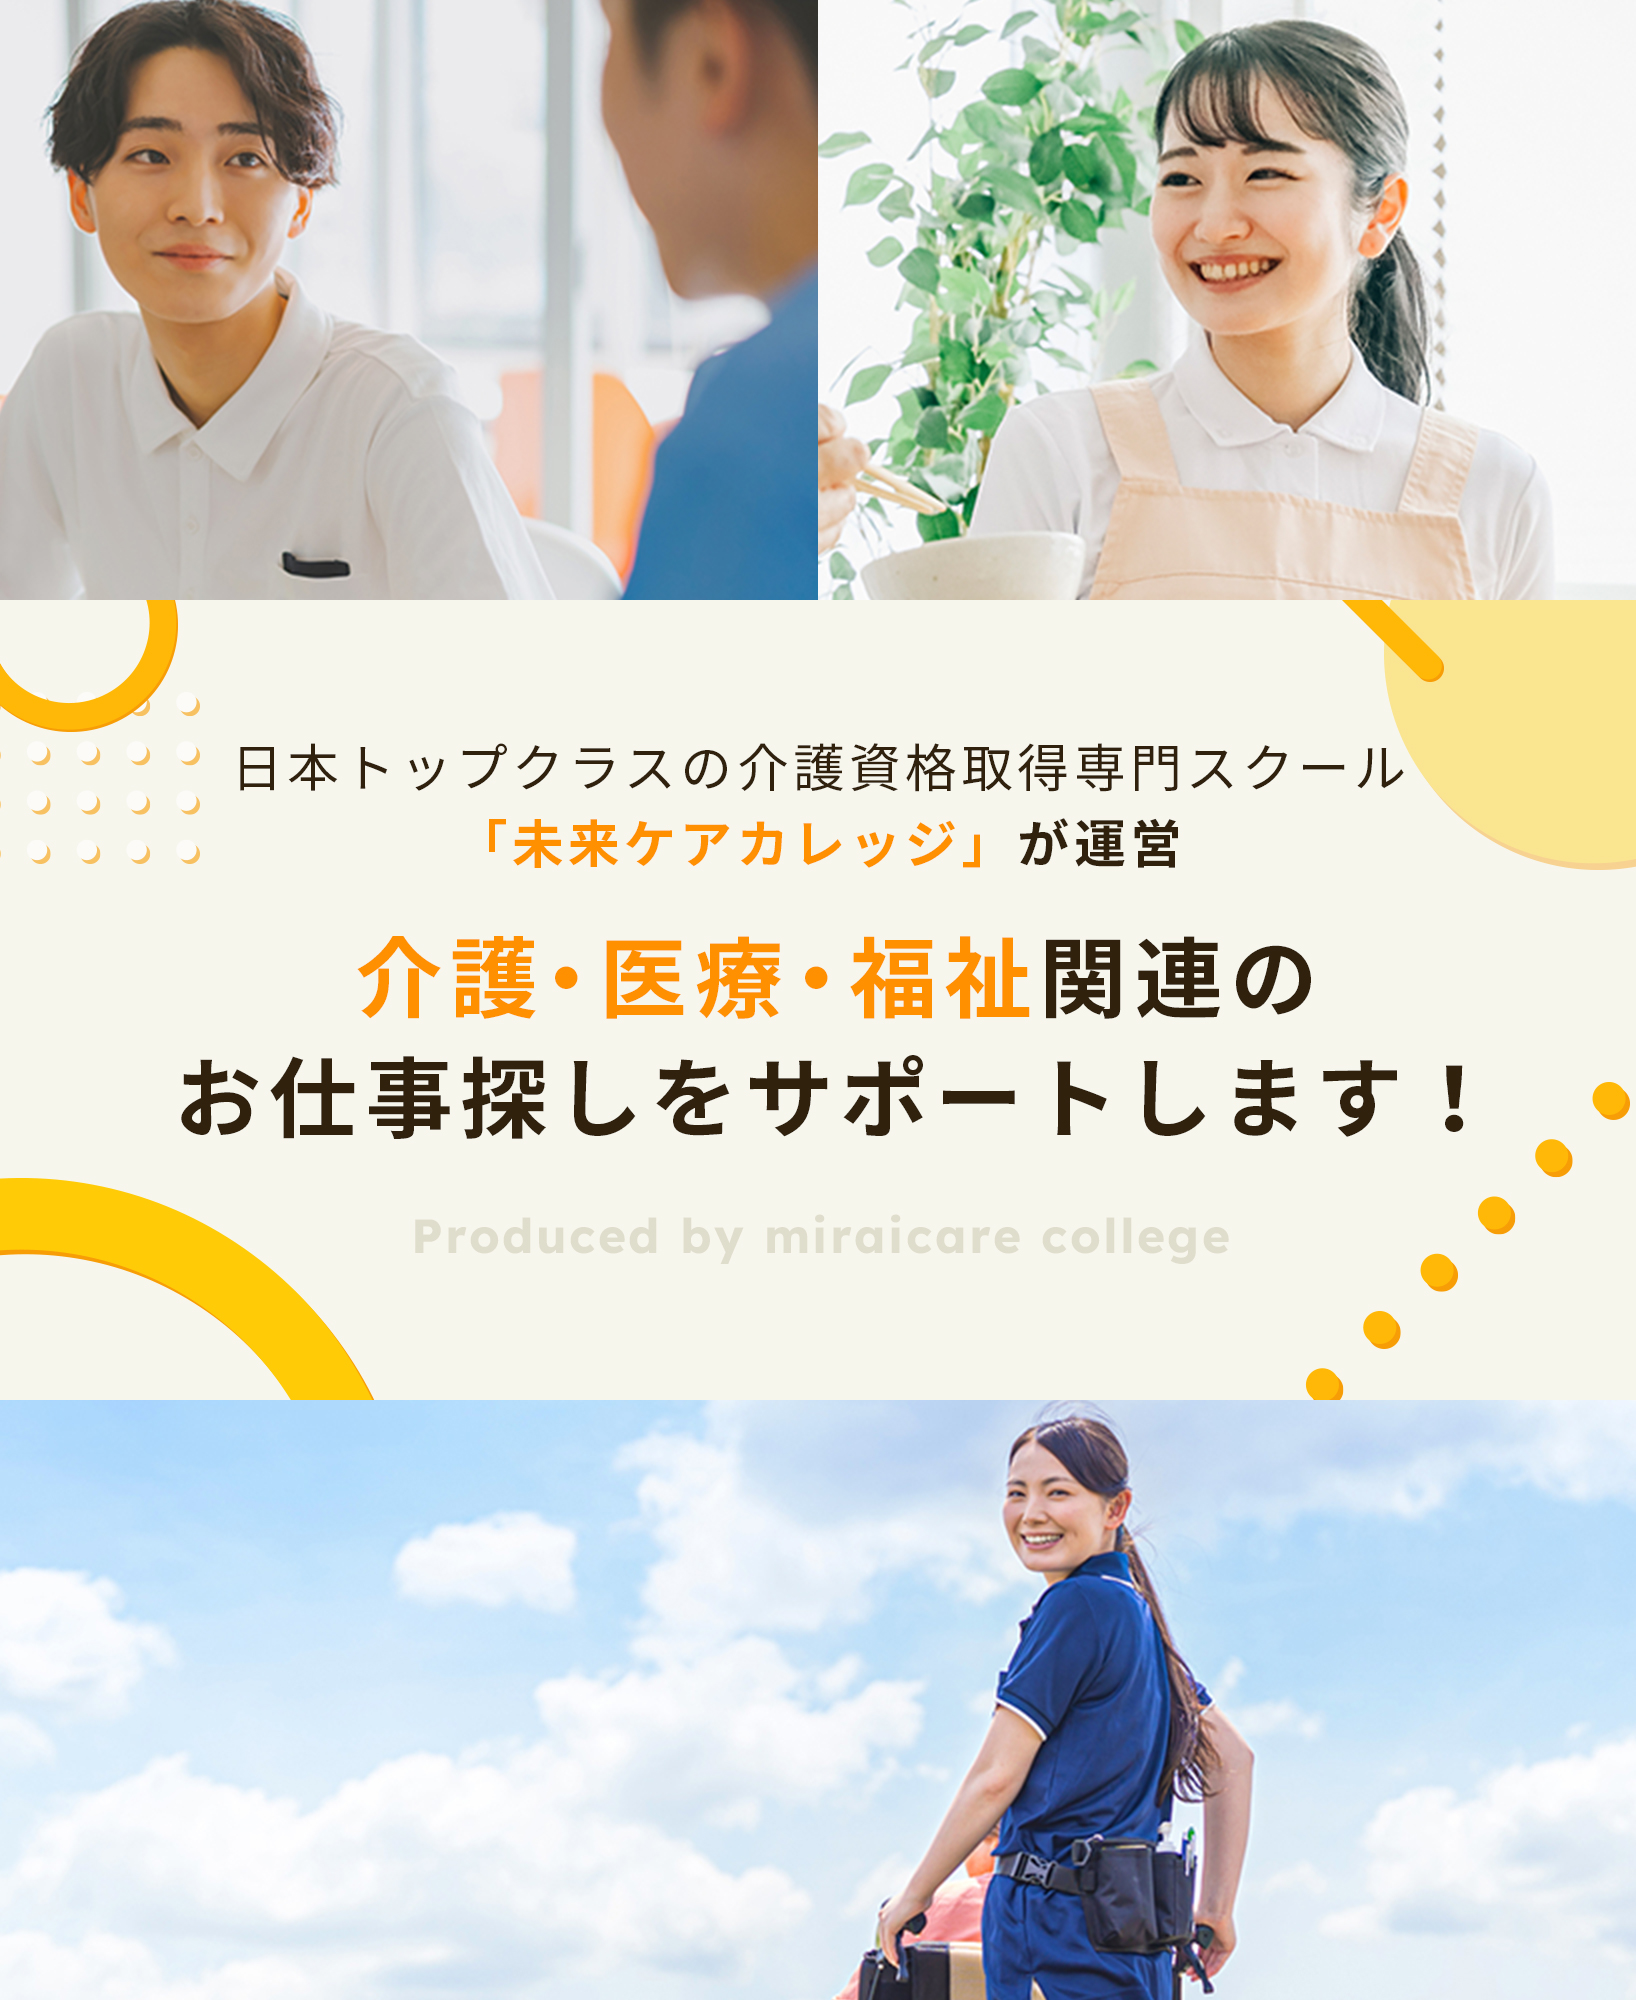 日本トップクラスの介護資格取得専門スクール「未来ケアカレッジ」が運営。介護・医療・福祉関連のお仕事探しをサポートします！